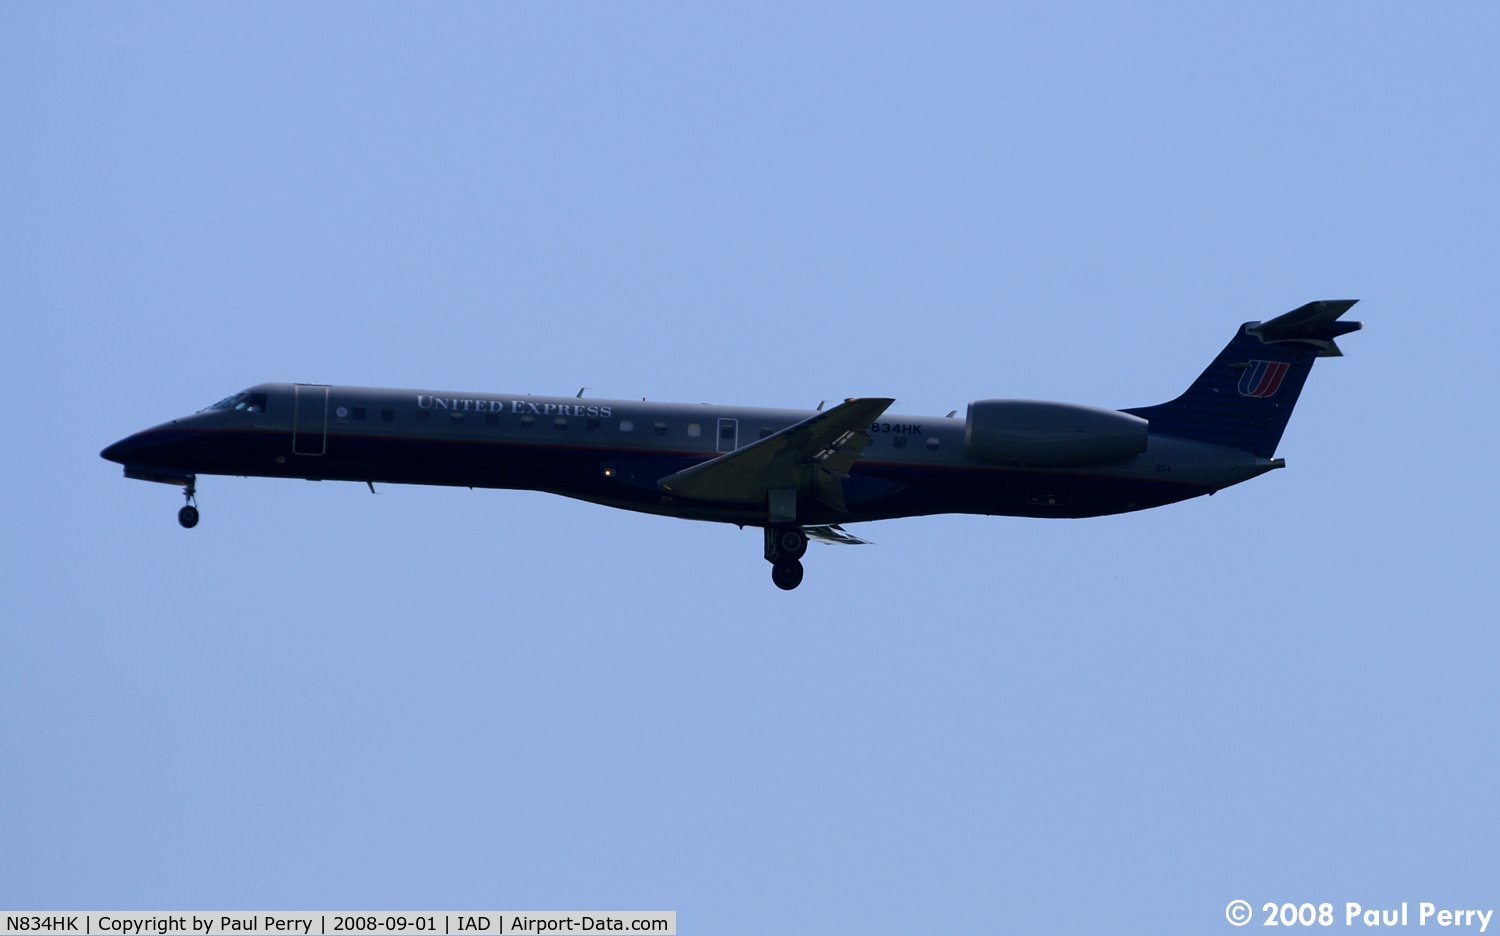 N834HK, 2000 Embraer ERJ-145LR (EMB-145LR) C/N 145269, Very sleek